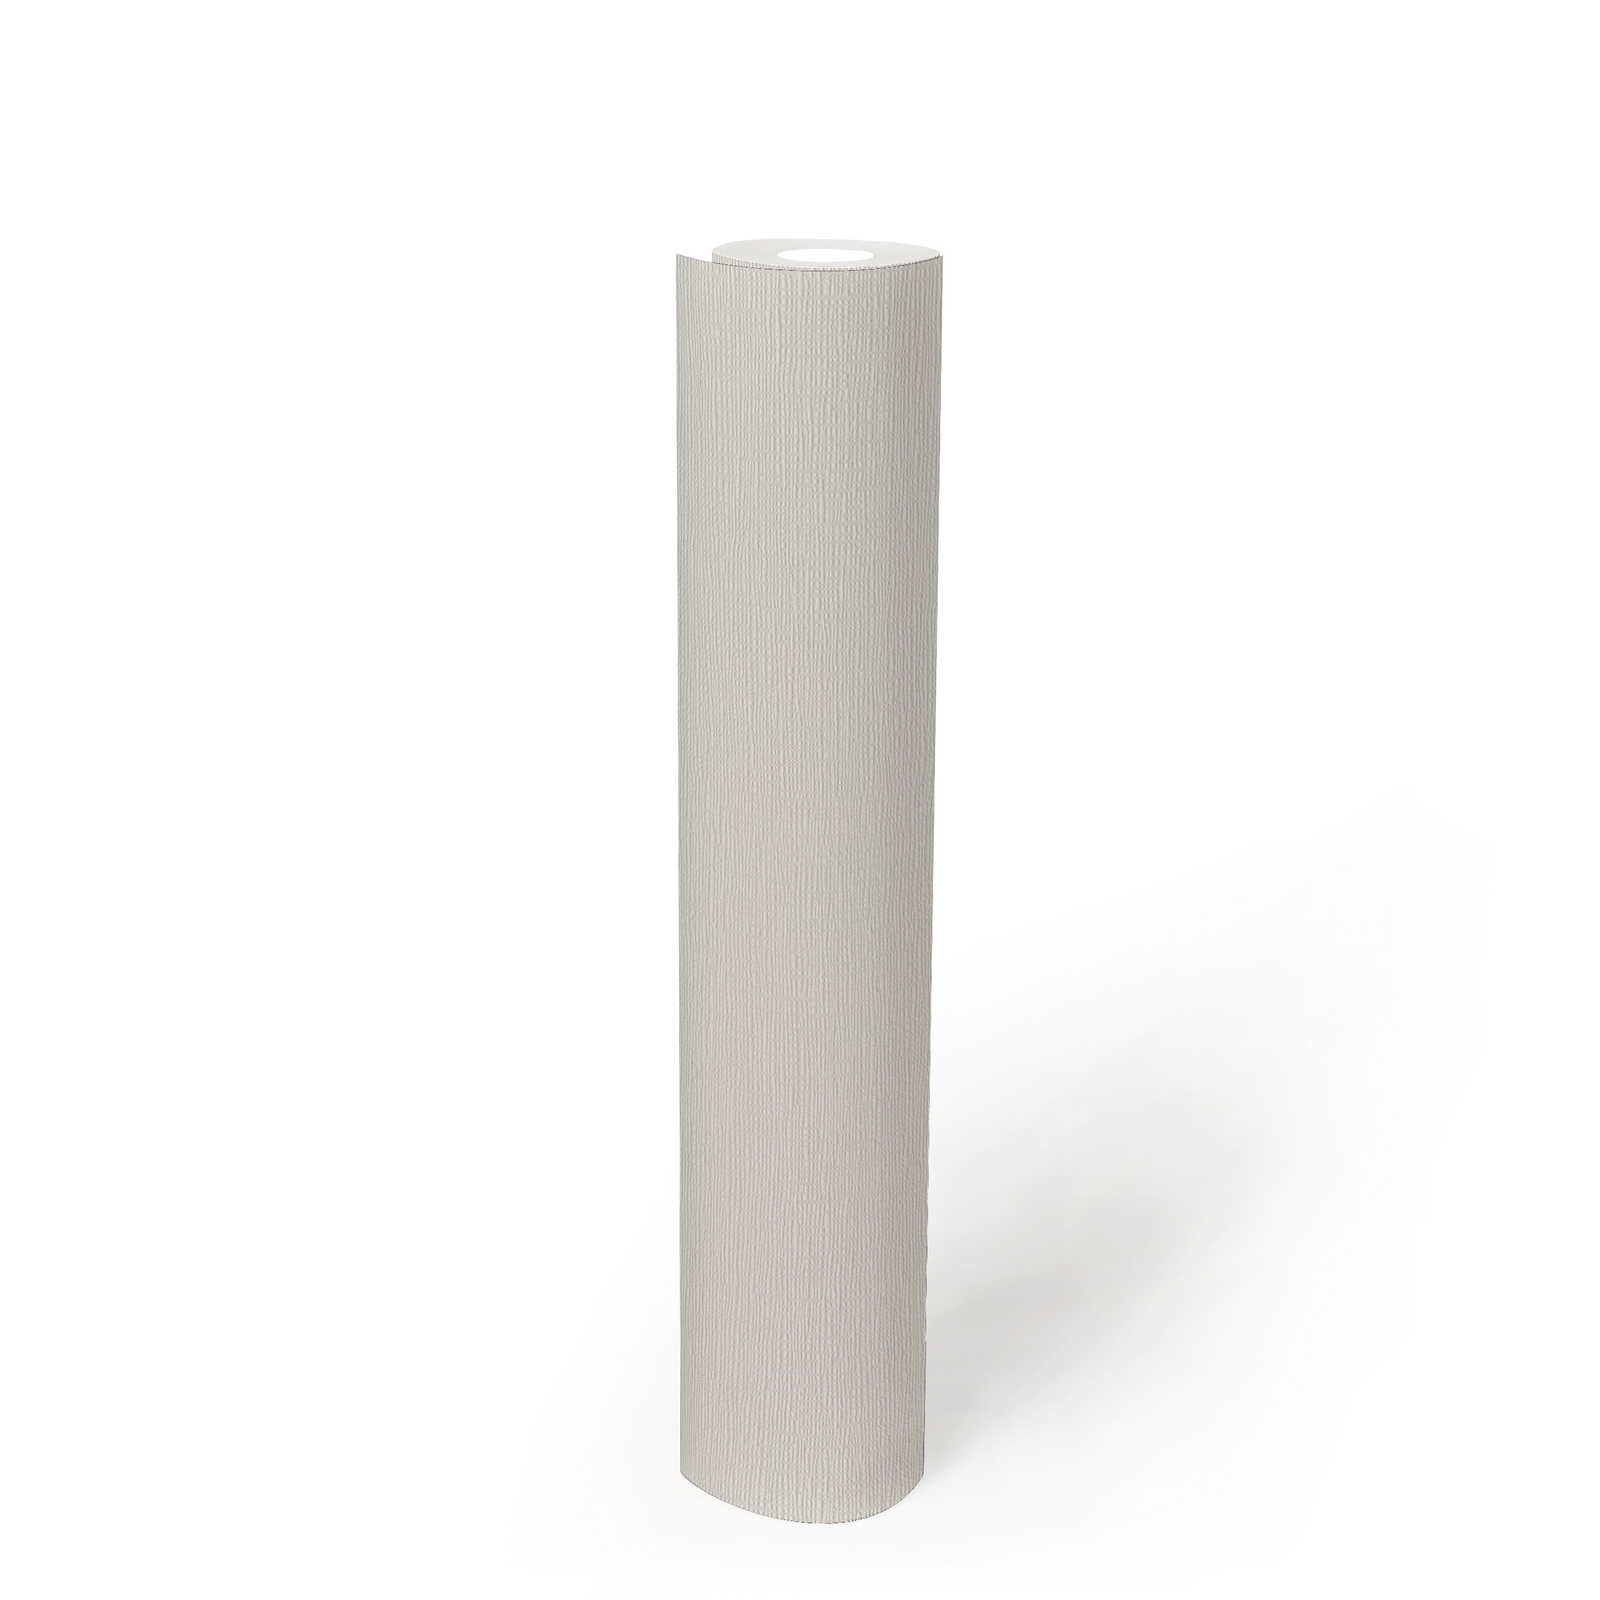             Einfarbige Tapete Weiß mit Struktur im Retro Design
        